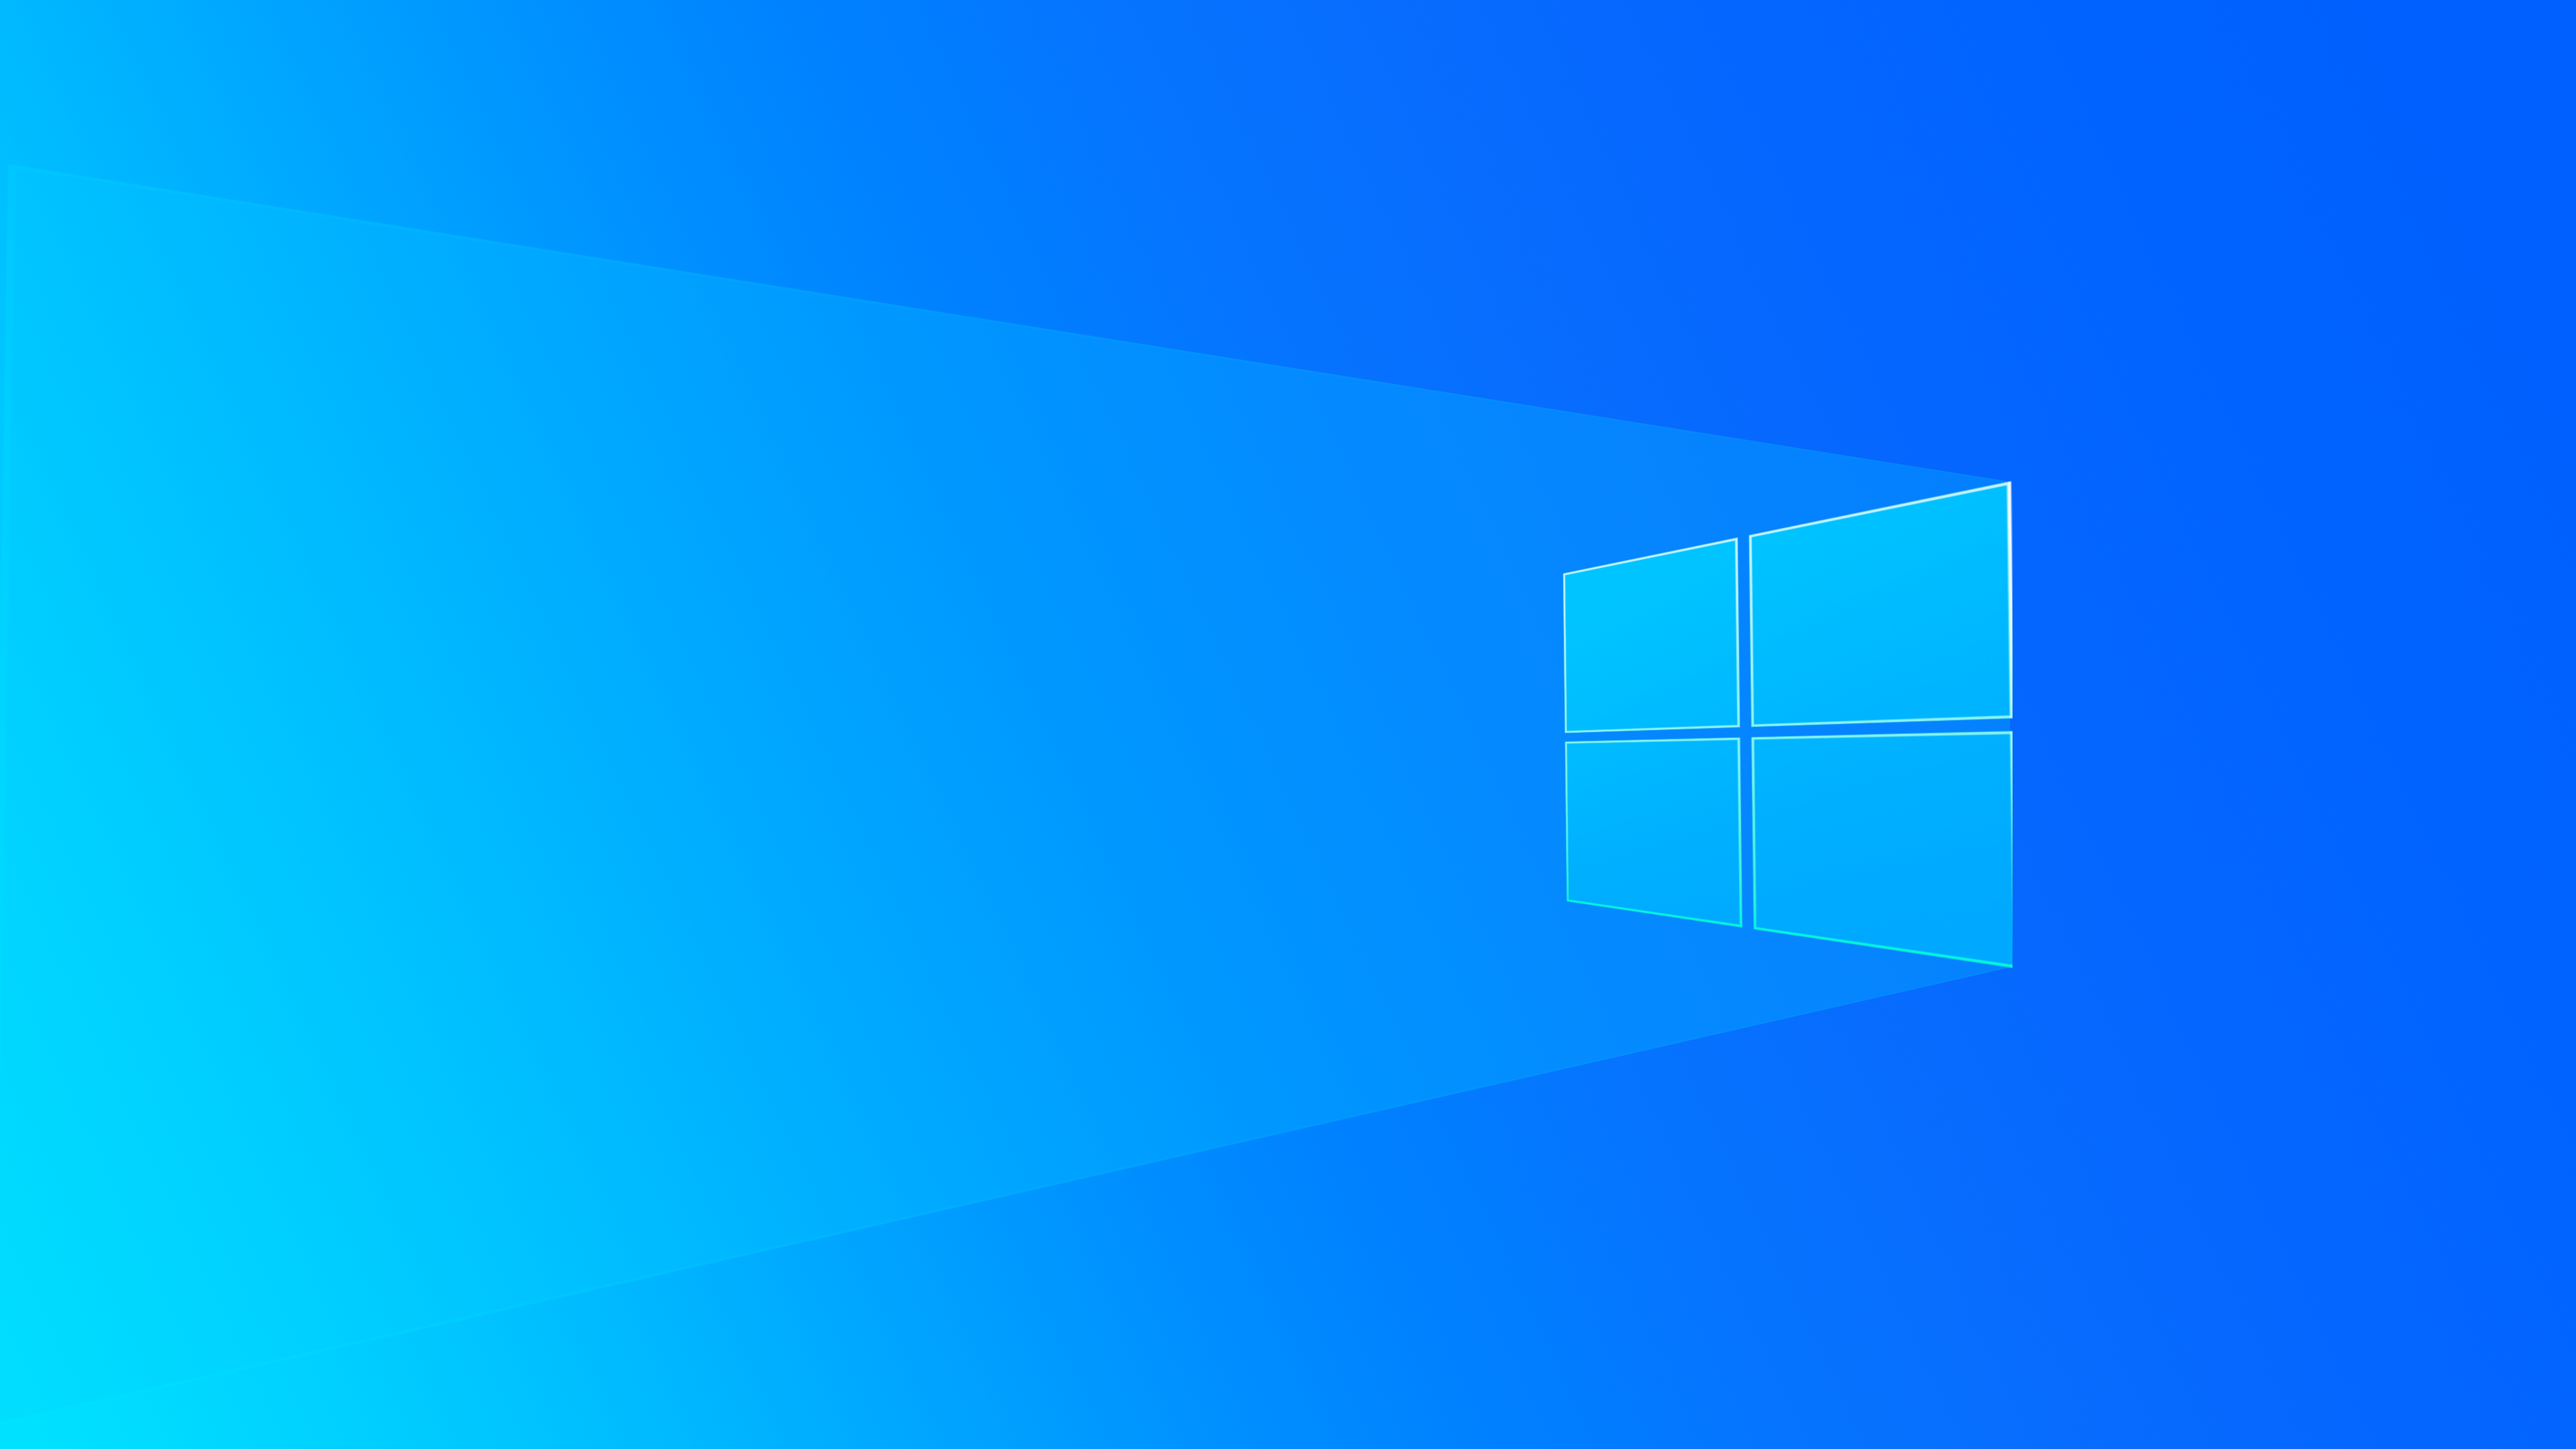 Windows 10 Colorful Background Logo